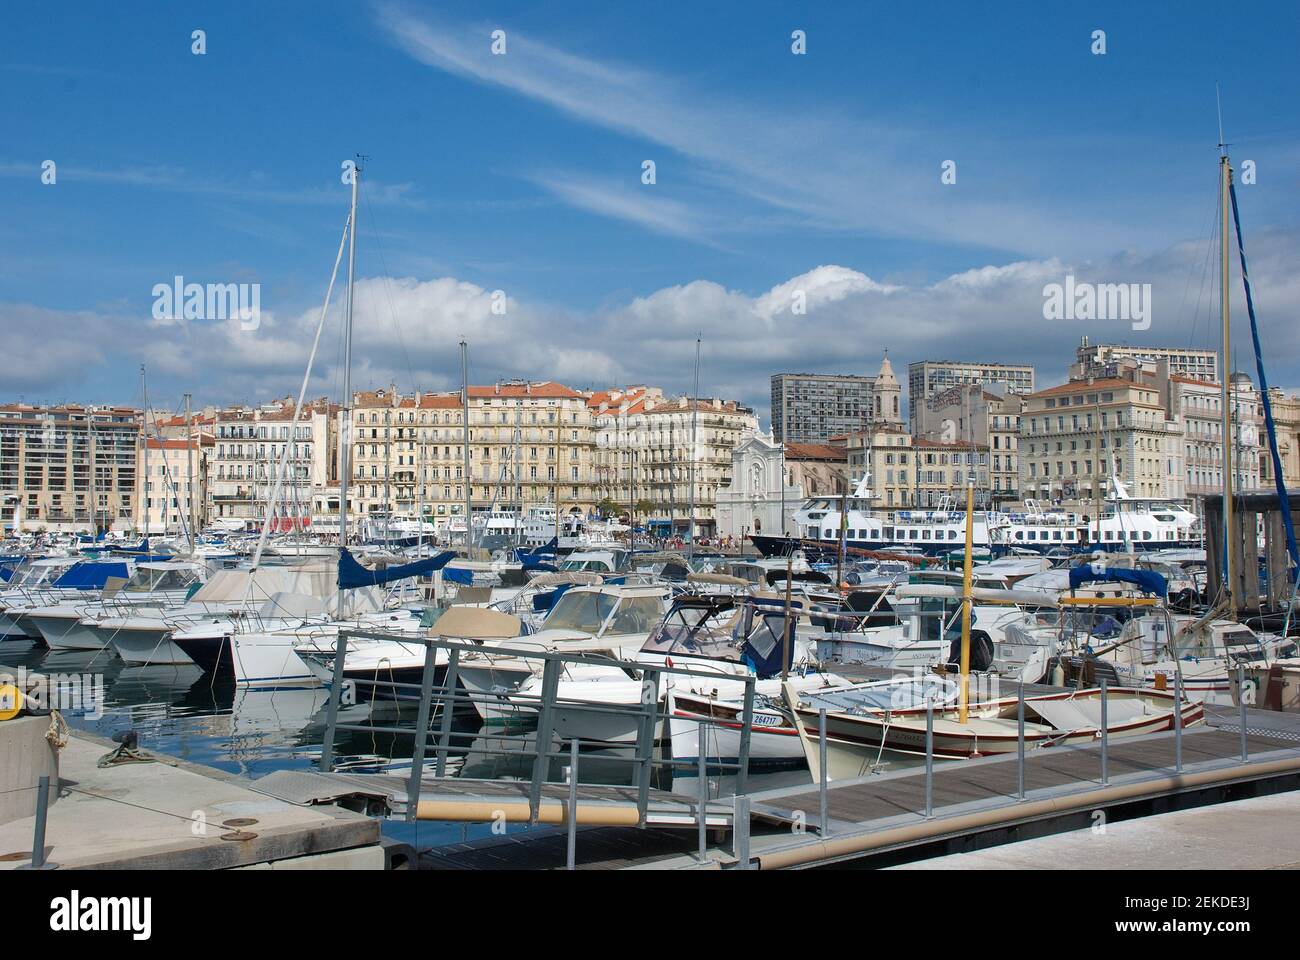 Le vieux port de Marseille (Vieux Port) à Marseille, Bouches-du-Rhône, Provence, France Banque D'Images